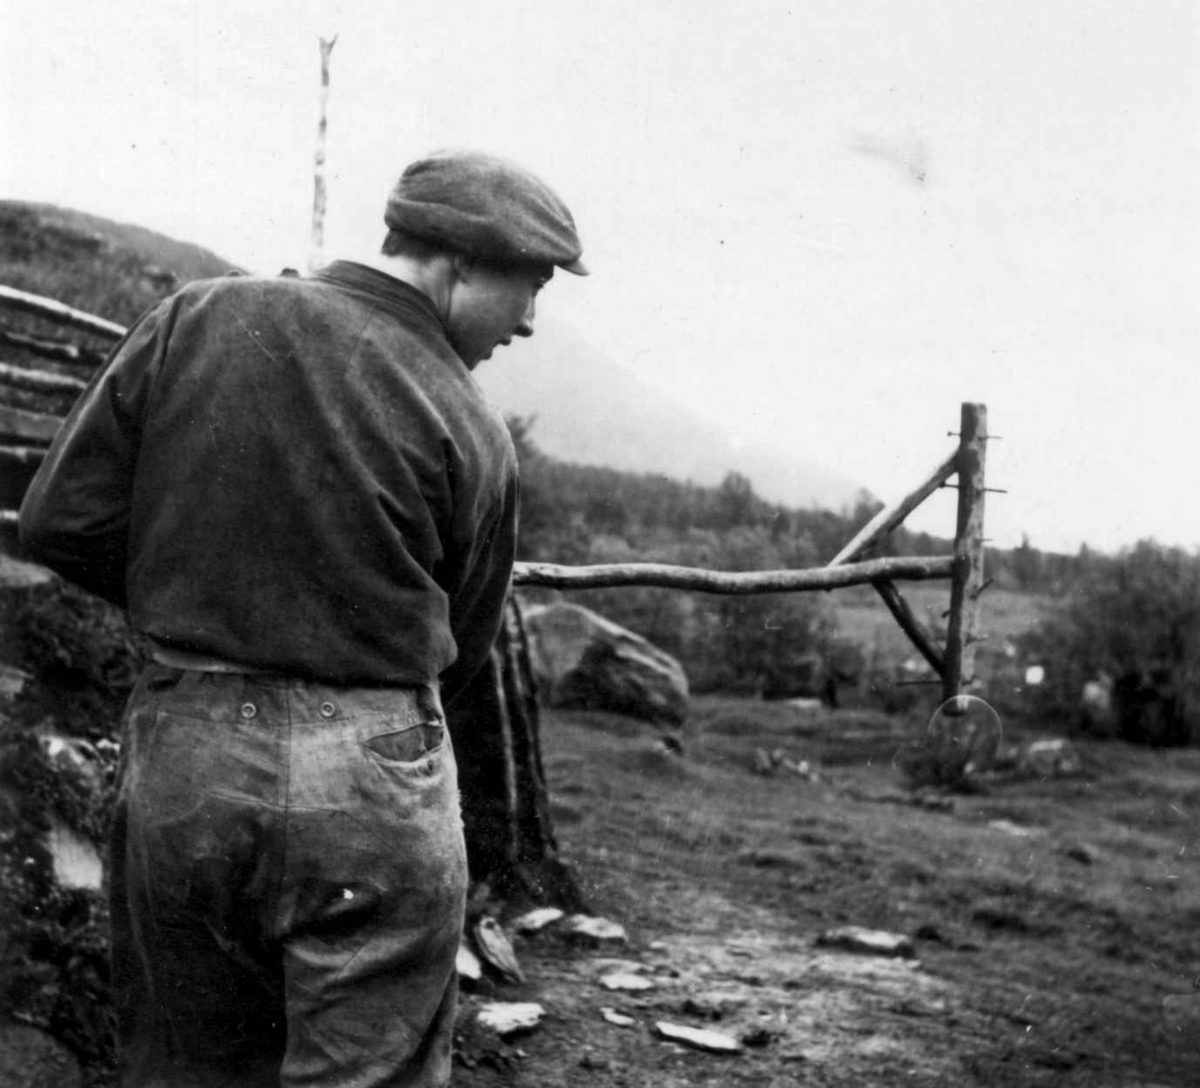 Mann med harv, trerive med islåtte jernpigger, brukt til å bearbeide jorden med. Stordalen 1948.